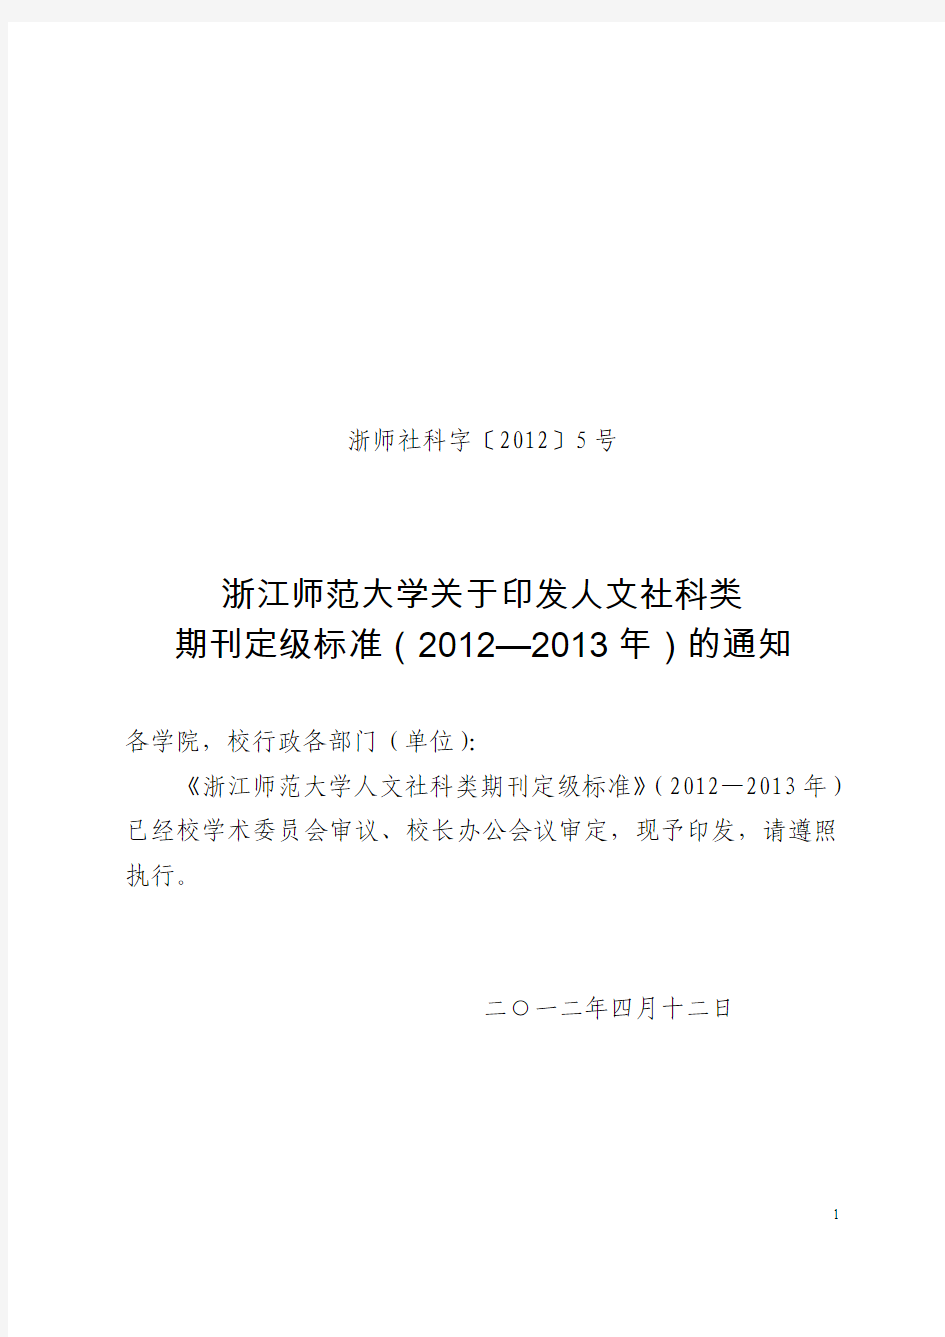 2-《浙江师范大学人文社科类期刊定级标准》(2012—2013年)